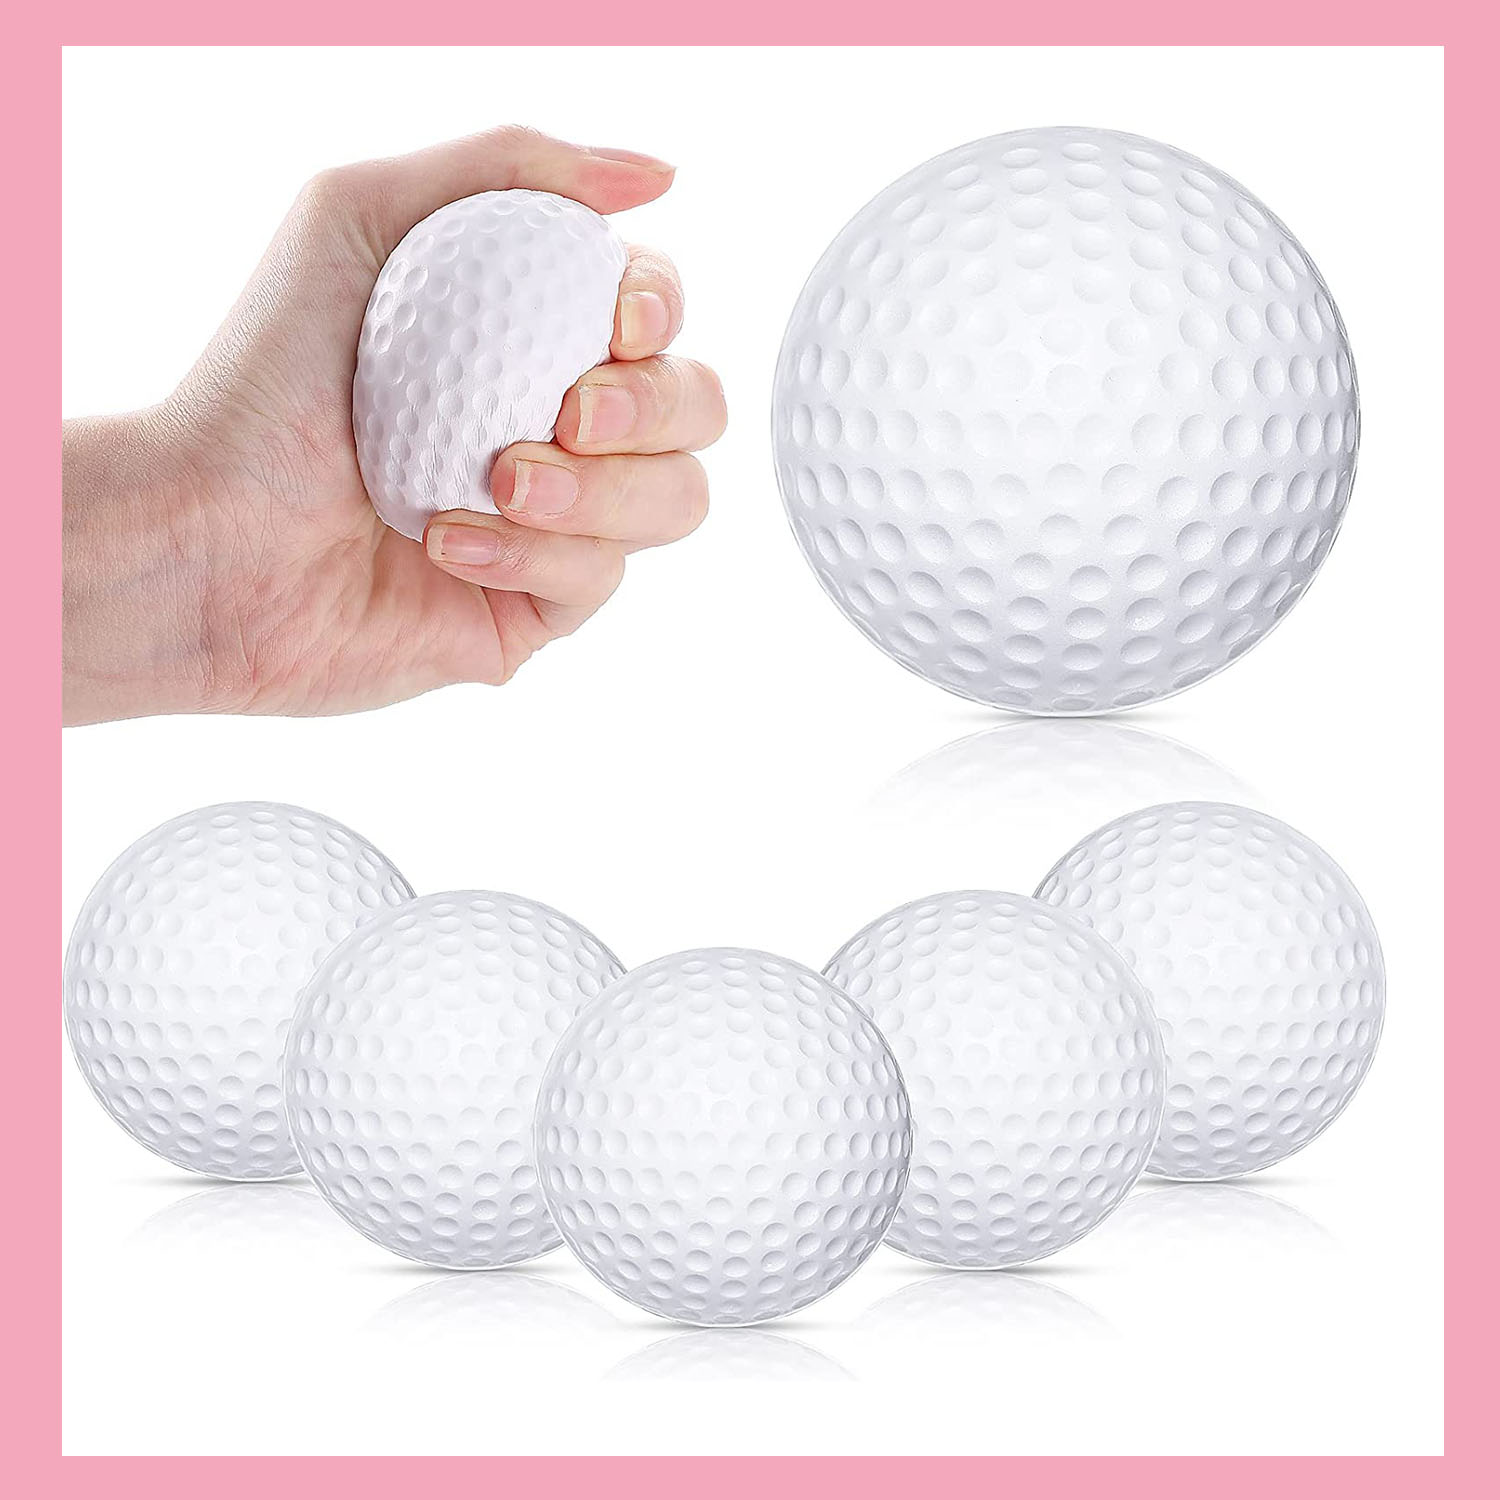 Golf Ball Mini Stress Ball Small Foam Balls Sports Stress Balls Toys 